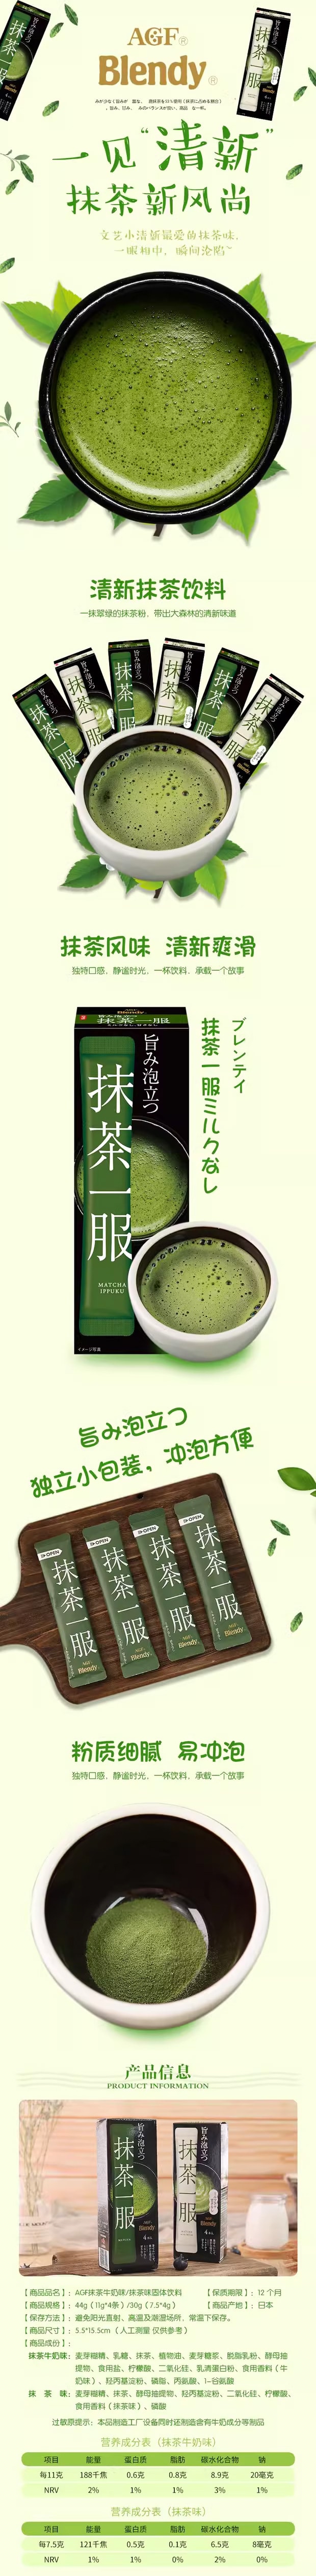 【日本直邮】AGF Blendy 宇治抹茶粉 7.5g*4条